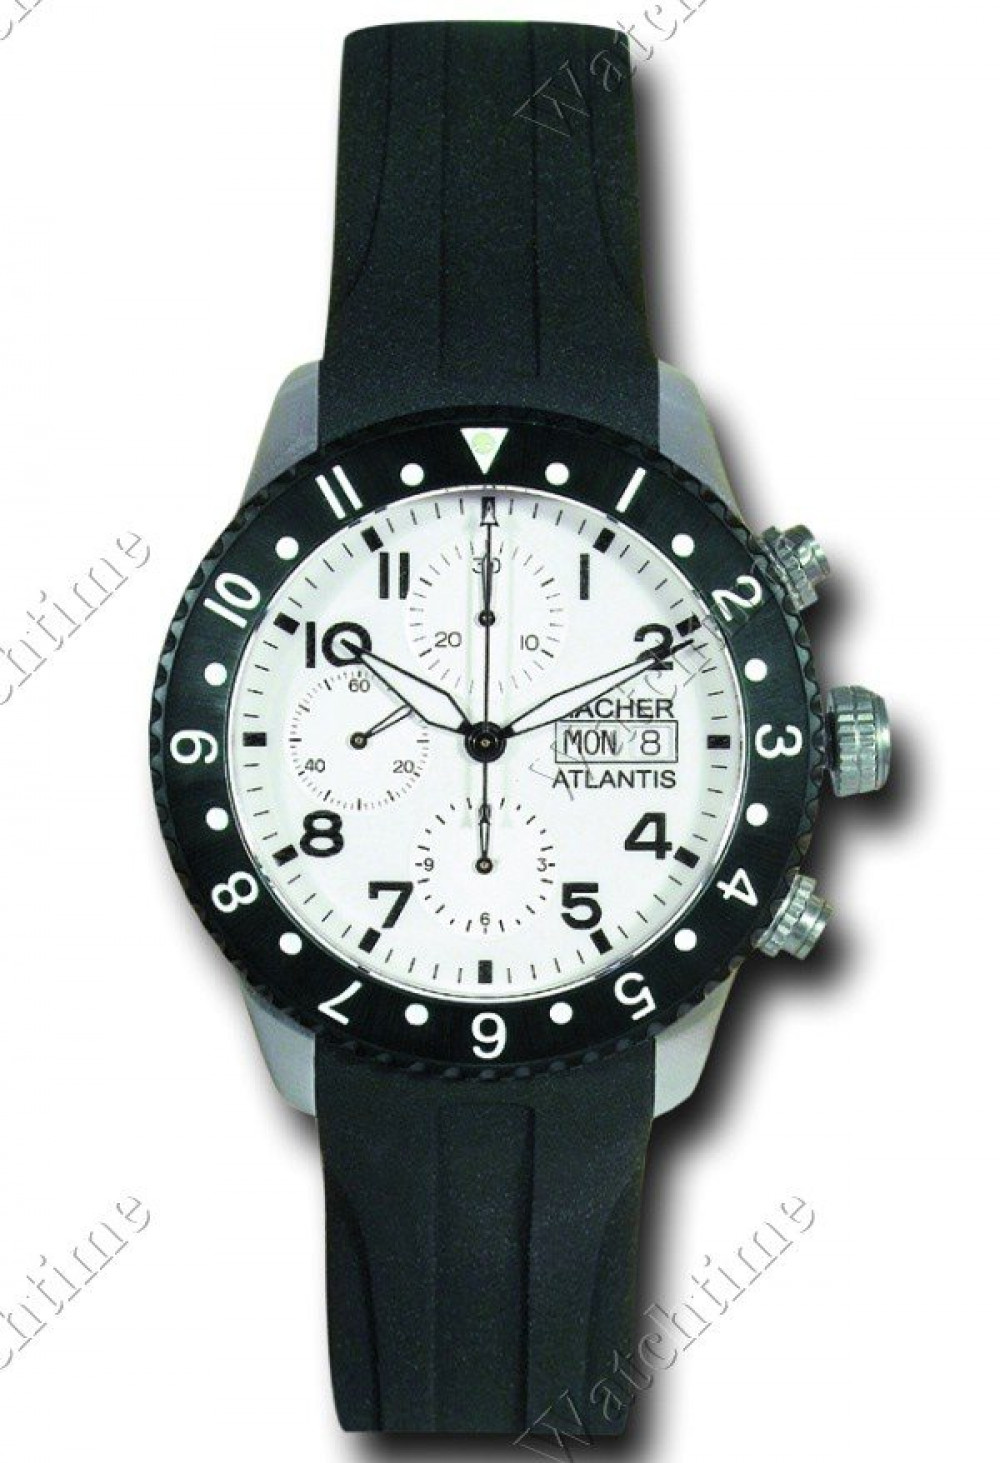 Zegarek firmy Hacher, model Atlantis